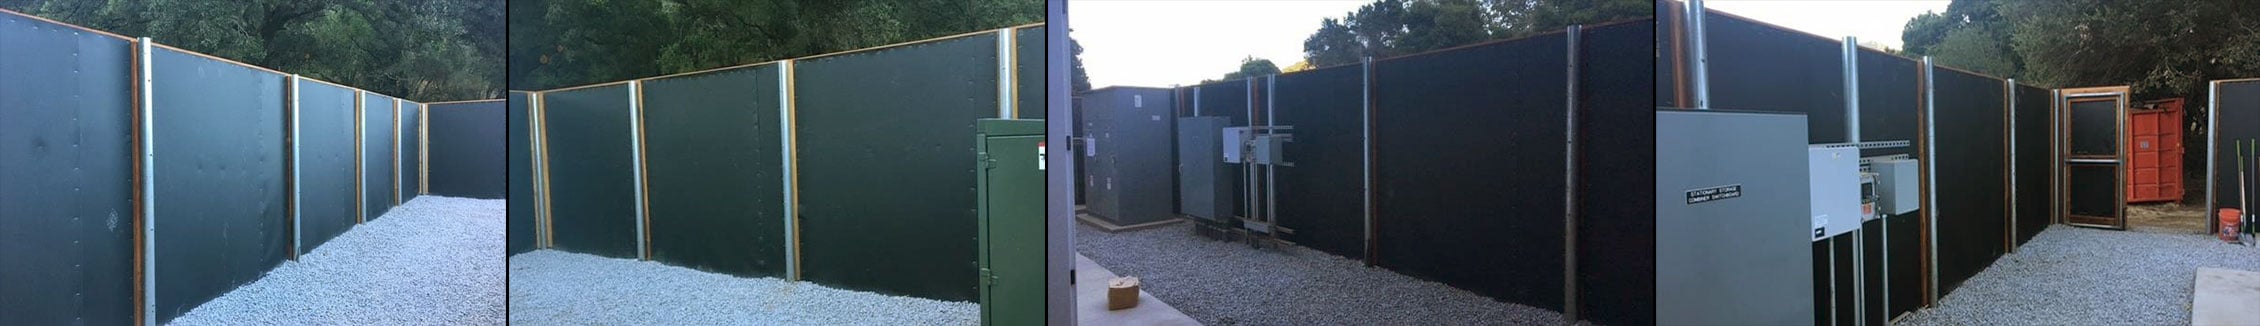 Tesla Stationary Power Storage Unit Enclosure